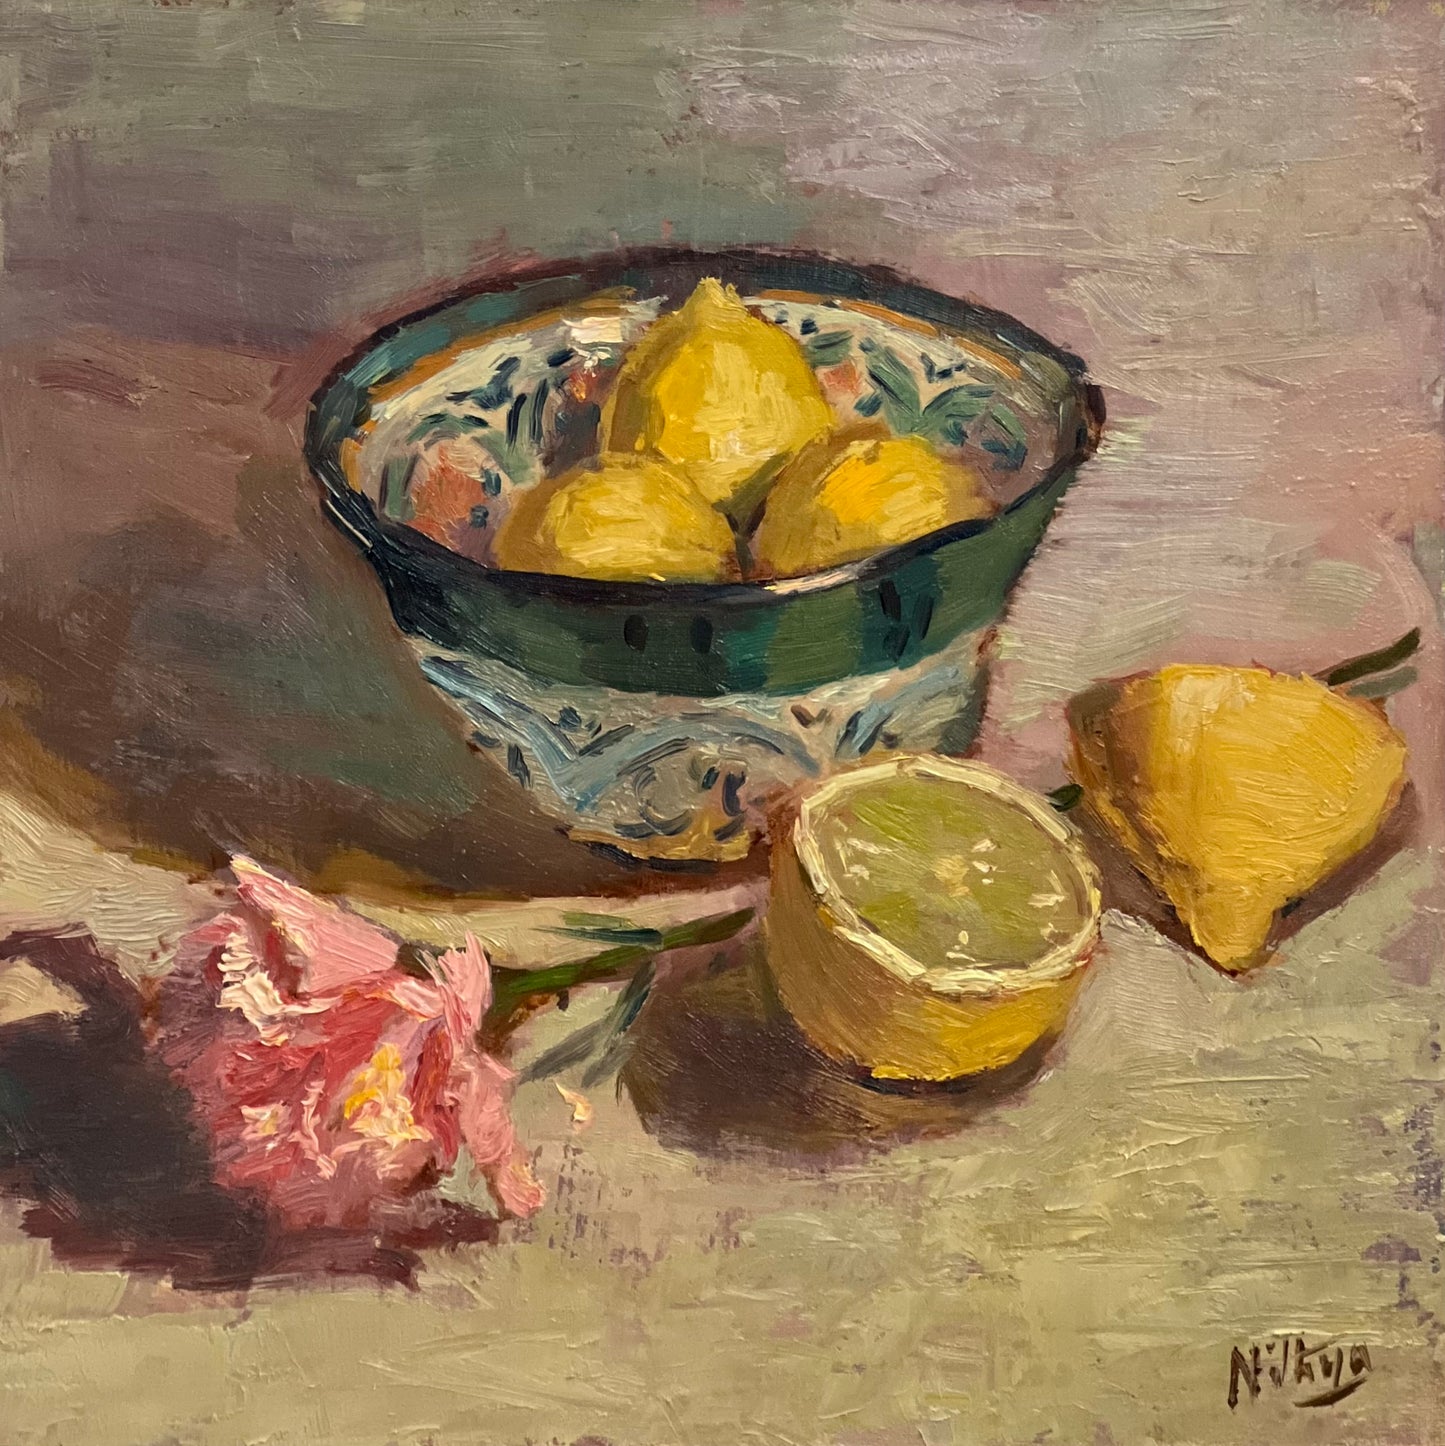 Bowl of Lemons in the studio